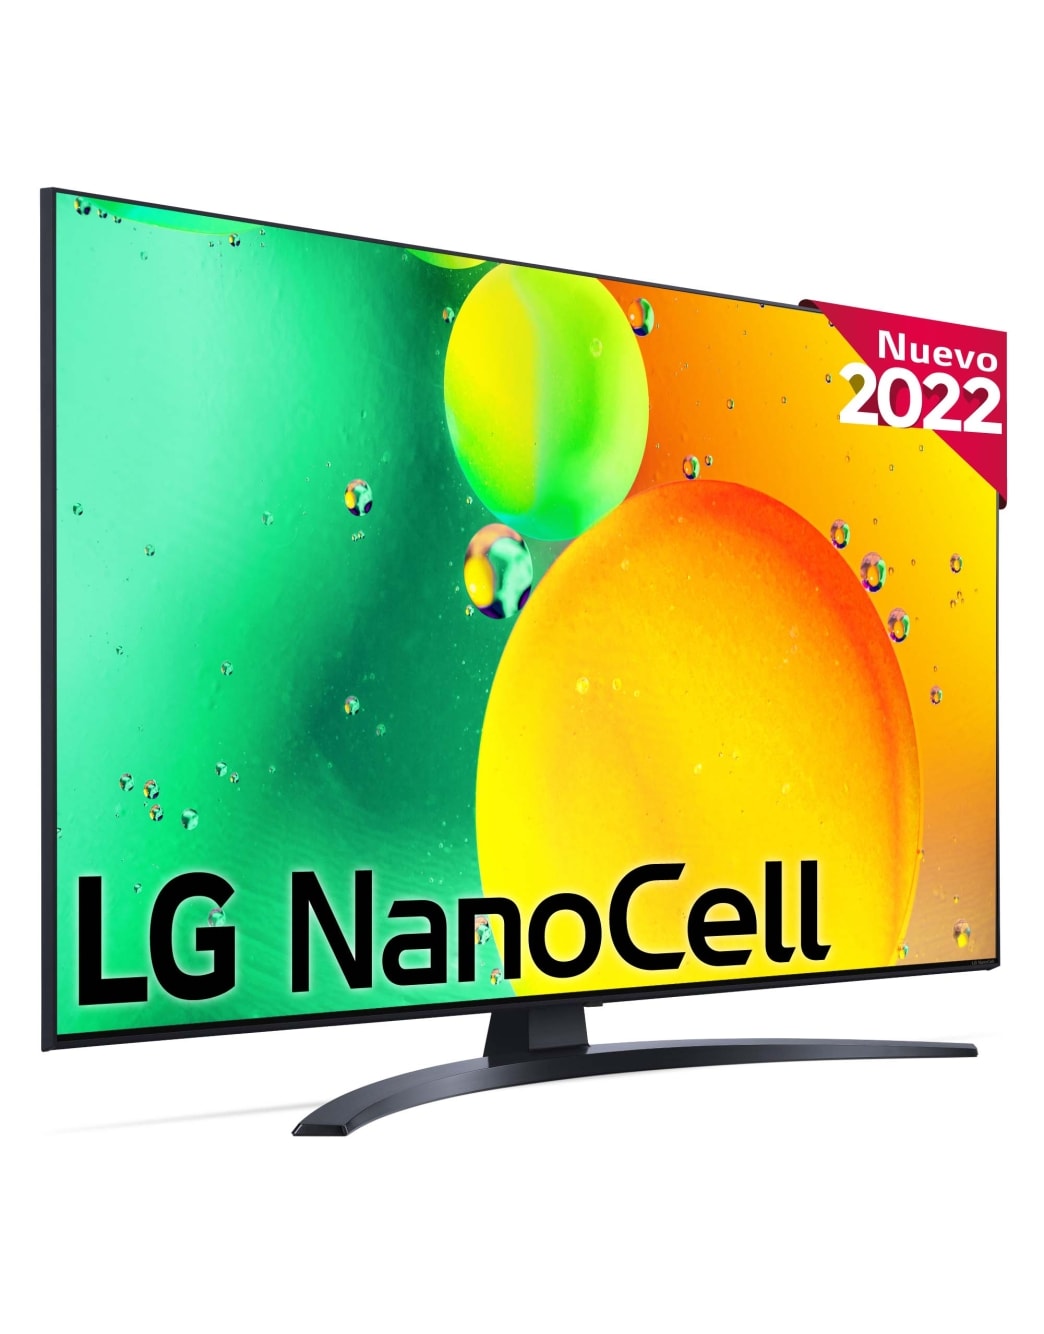 | 10, con y Televisor España a5 TV webOS22 HGiG, compatible Procesador HDR Nanocell, LG Smart Gen Potencia 4K formatos 4K LG de HLG 5, LG Gran